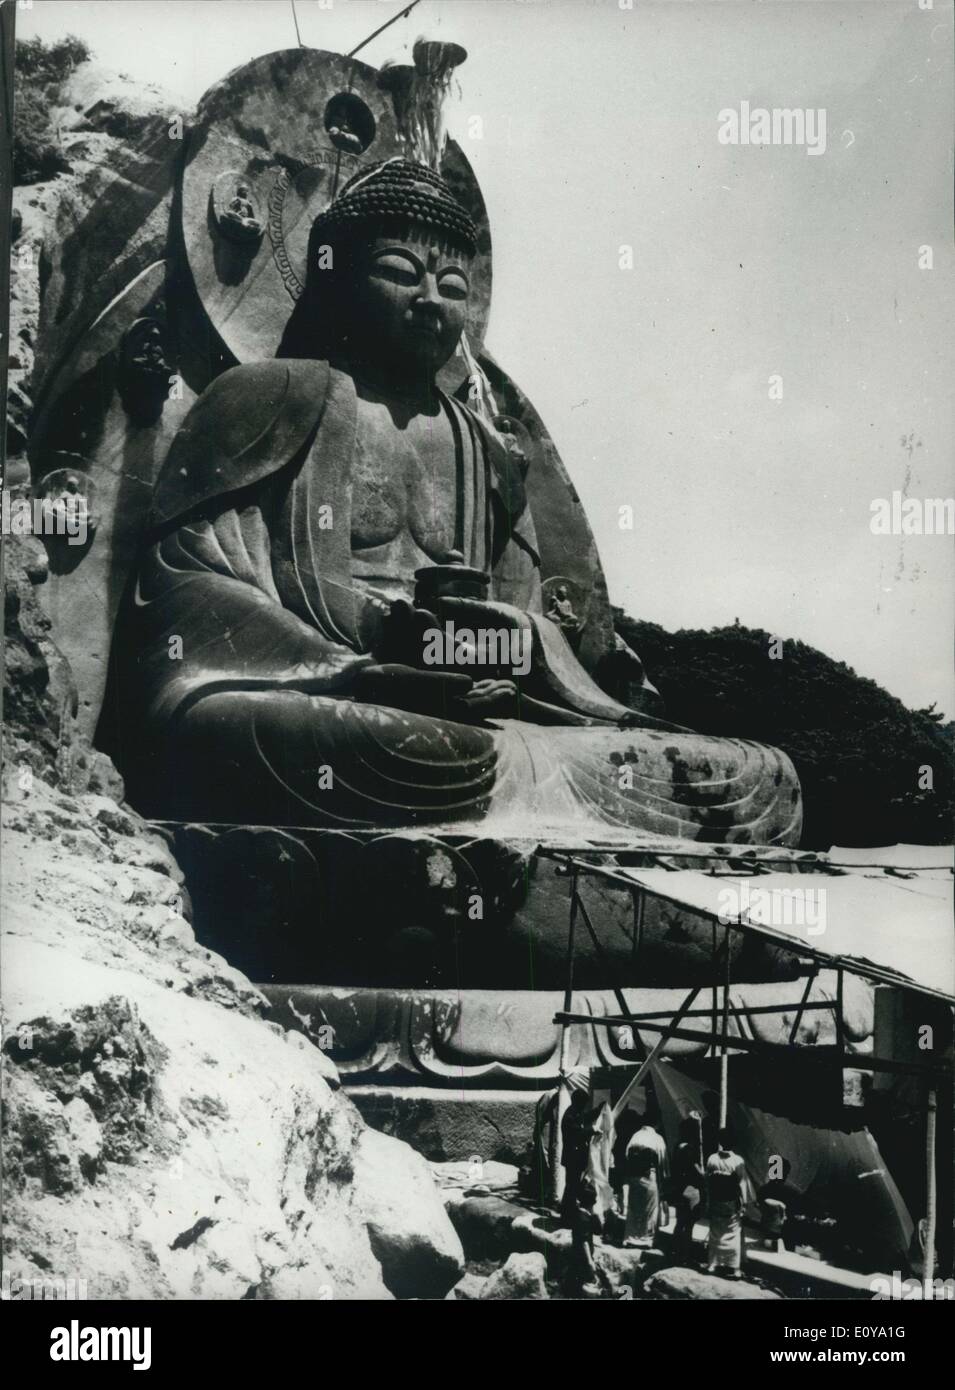 16. Jun. 1969 - riesiger Buddha in japanischer Klippe geschnitzt; DAIBUTSU oder großes Bild von Buddha 31.5 Meter hoch, auf der Wand einer Klippe in der Nähe des Nippenji-Tempels auf dem Berg NOKOGIRI in der Präfektur Chiba in Zentraljapan gemeißelt, Wurde letzte Woche mit religiösen Riten von Zen PR nicht gelütet der riesige Buddha neu der größte in Japan, wird ''Yakusha Ruriko Nyorai'' oder der hellblaue Stein buddha wegen der Farbe der Klippe, aus der es geschnitzt wurde. Die japanische Skulptur Kyoji Yatsuyanagi begann im August 196 mit seiner gigantischen Arbeit und vollendete die Buddah nach 5,000 Tagen für 60 Stockfoto